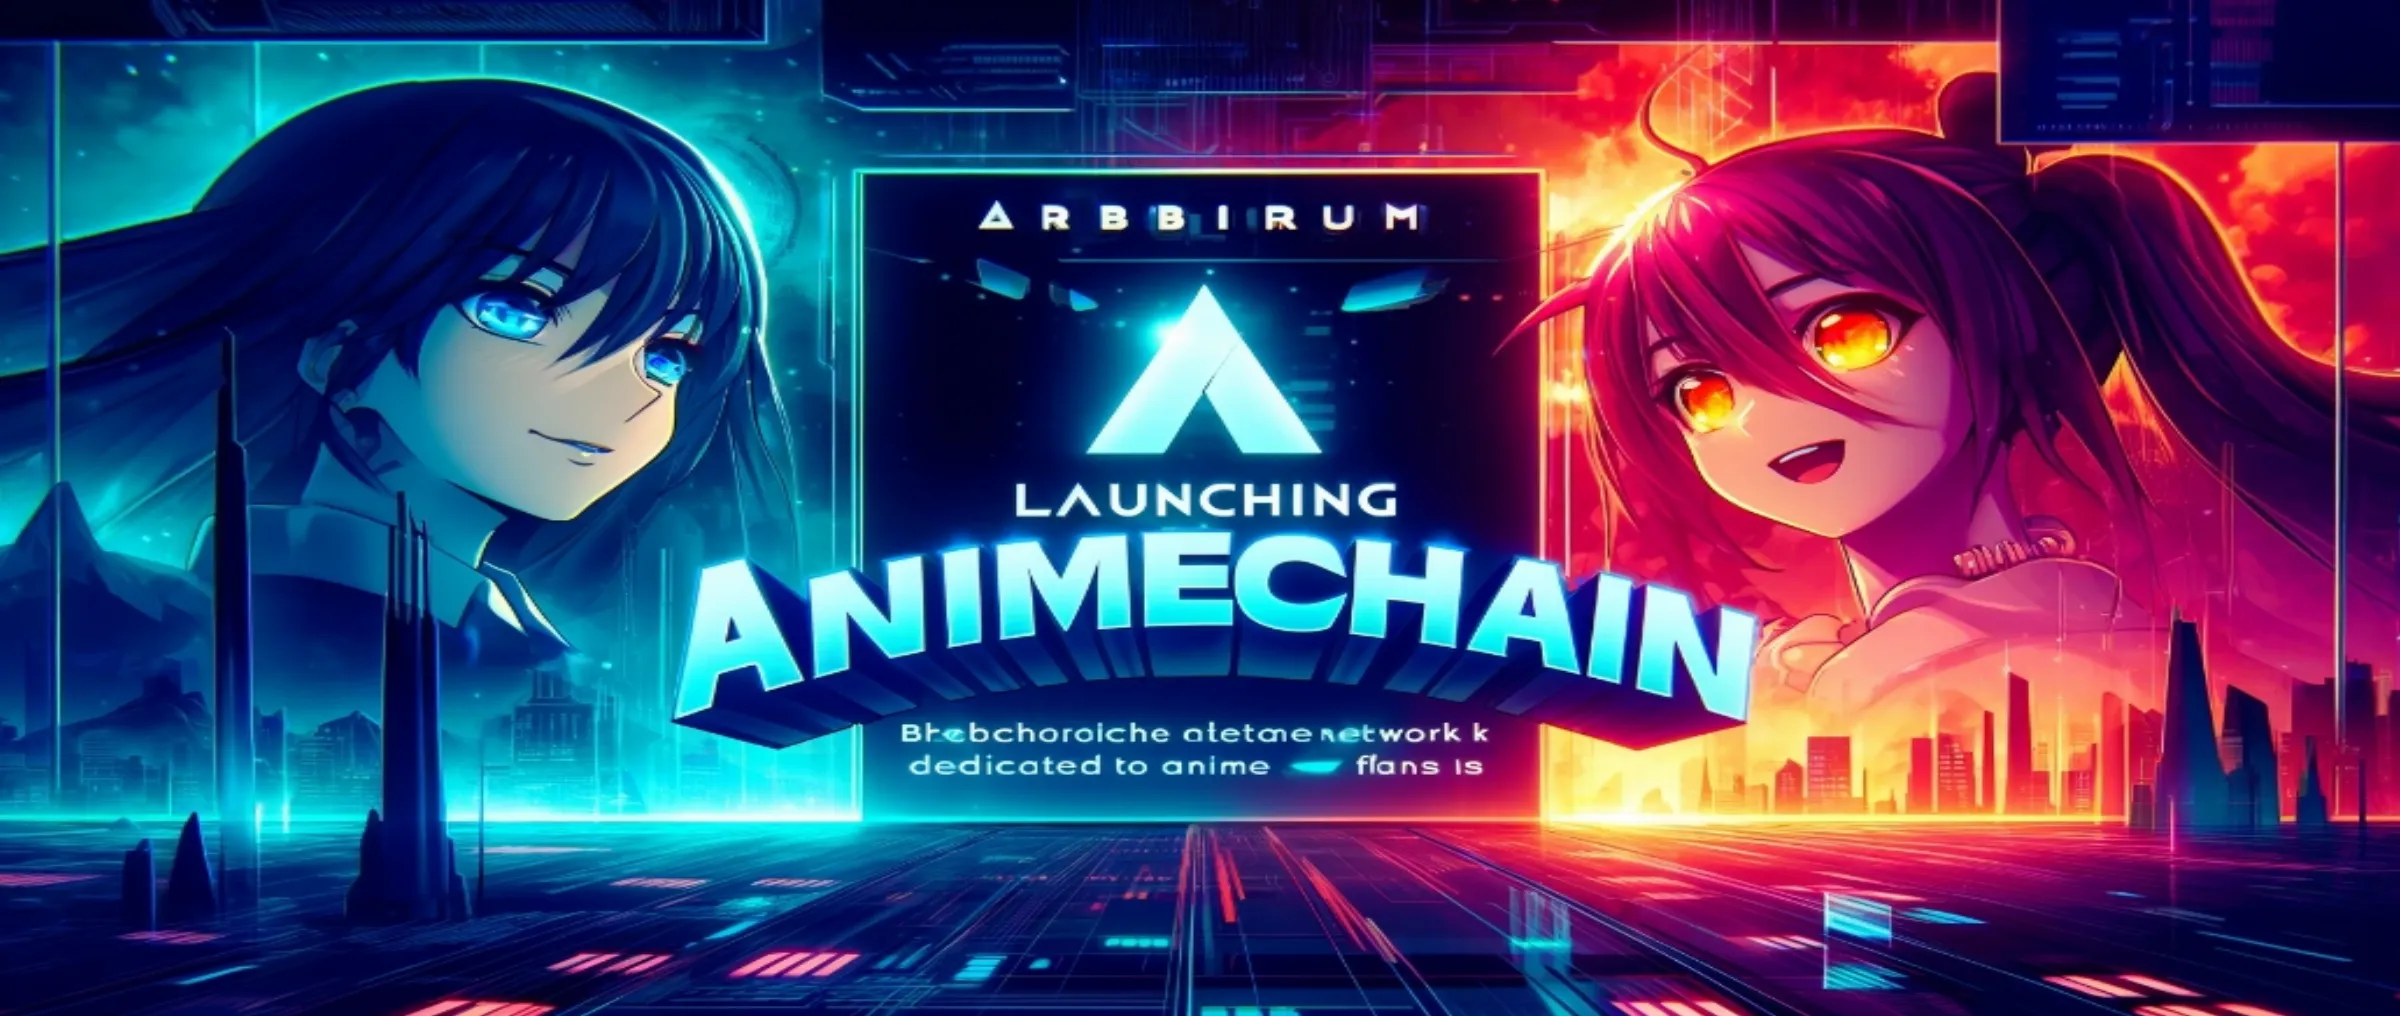 Arbitrum и Azuki запускают AnimeChain - сеть для поклонников аниме